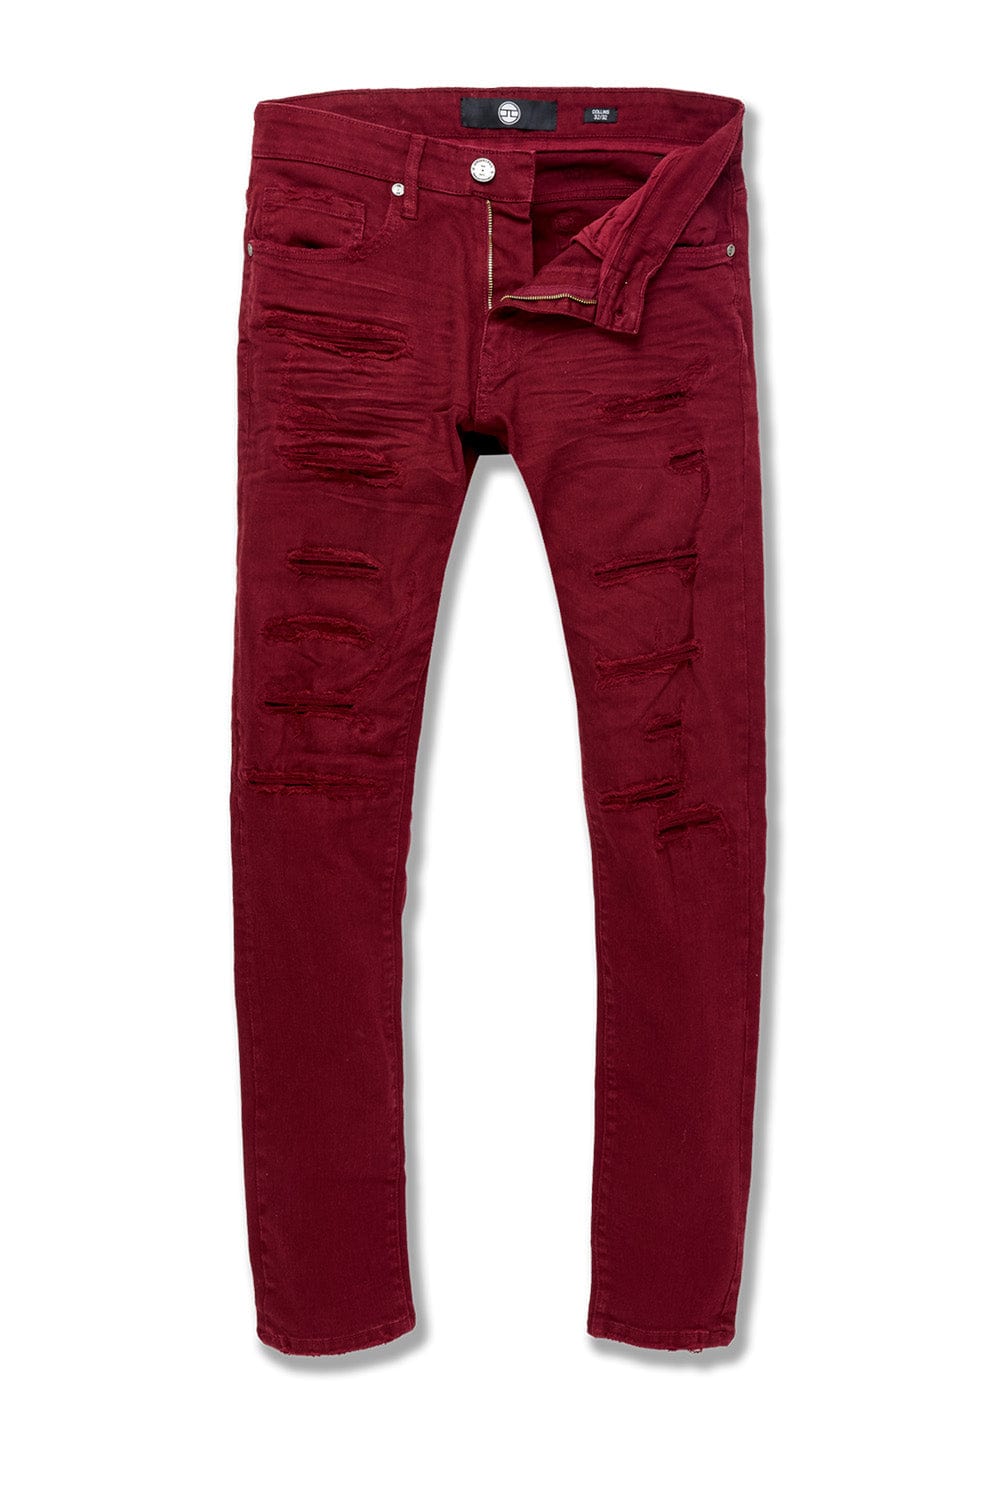 Jordan Craig Sean - Tribeca Twill Pants (Exclusive Colors) Bordeaux / 30/30